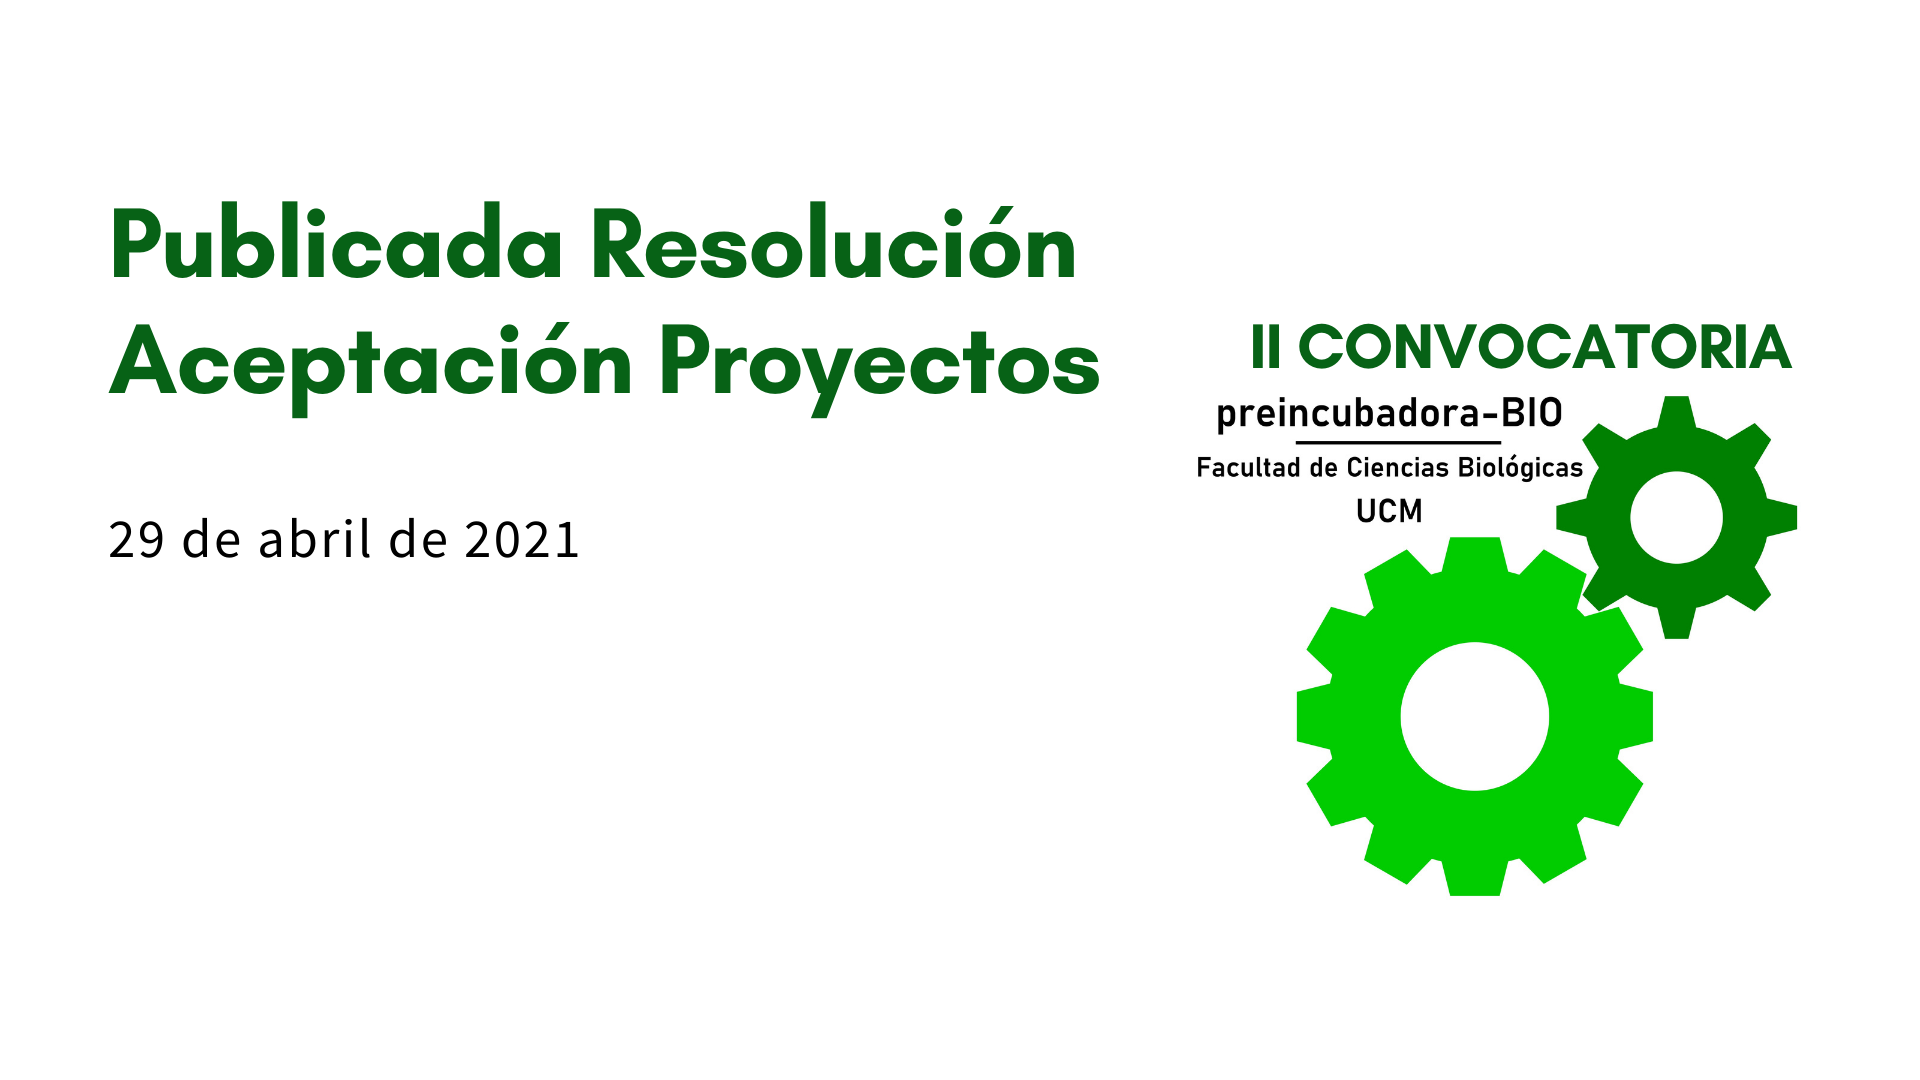 Publicada la resolución de los proyectos aceptados en la II Convocatoria Preincubadora Facultad Ciencias Biológicas